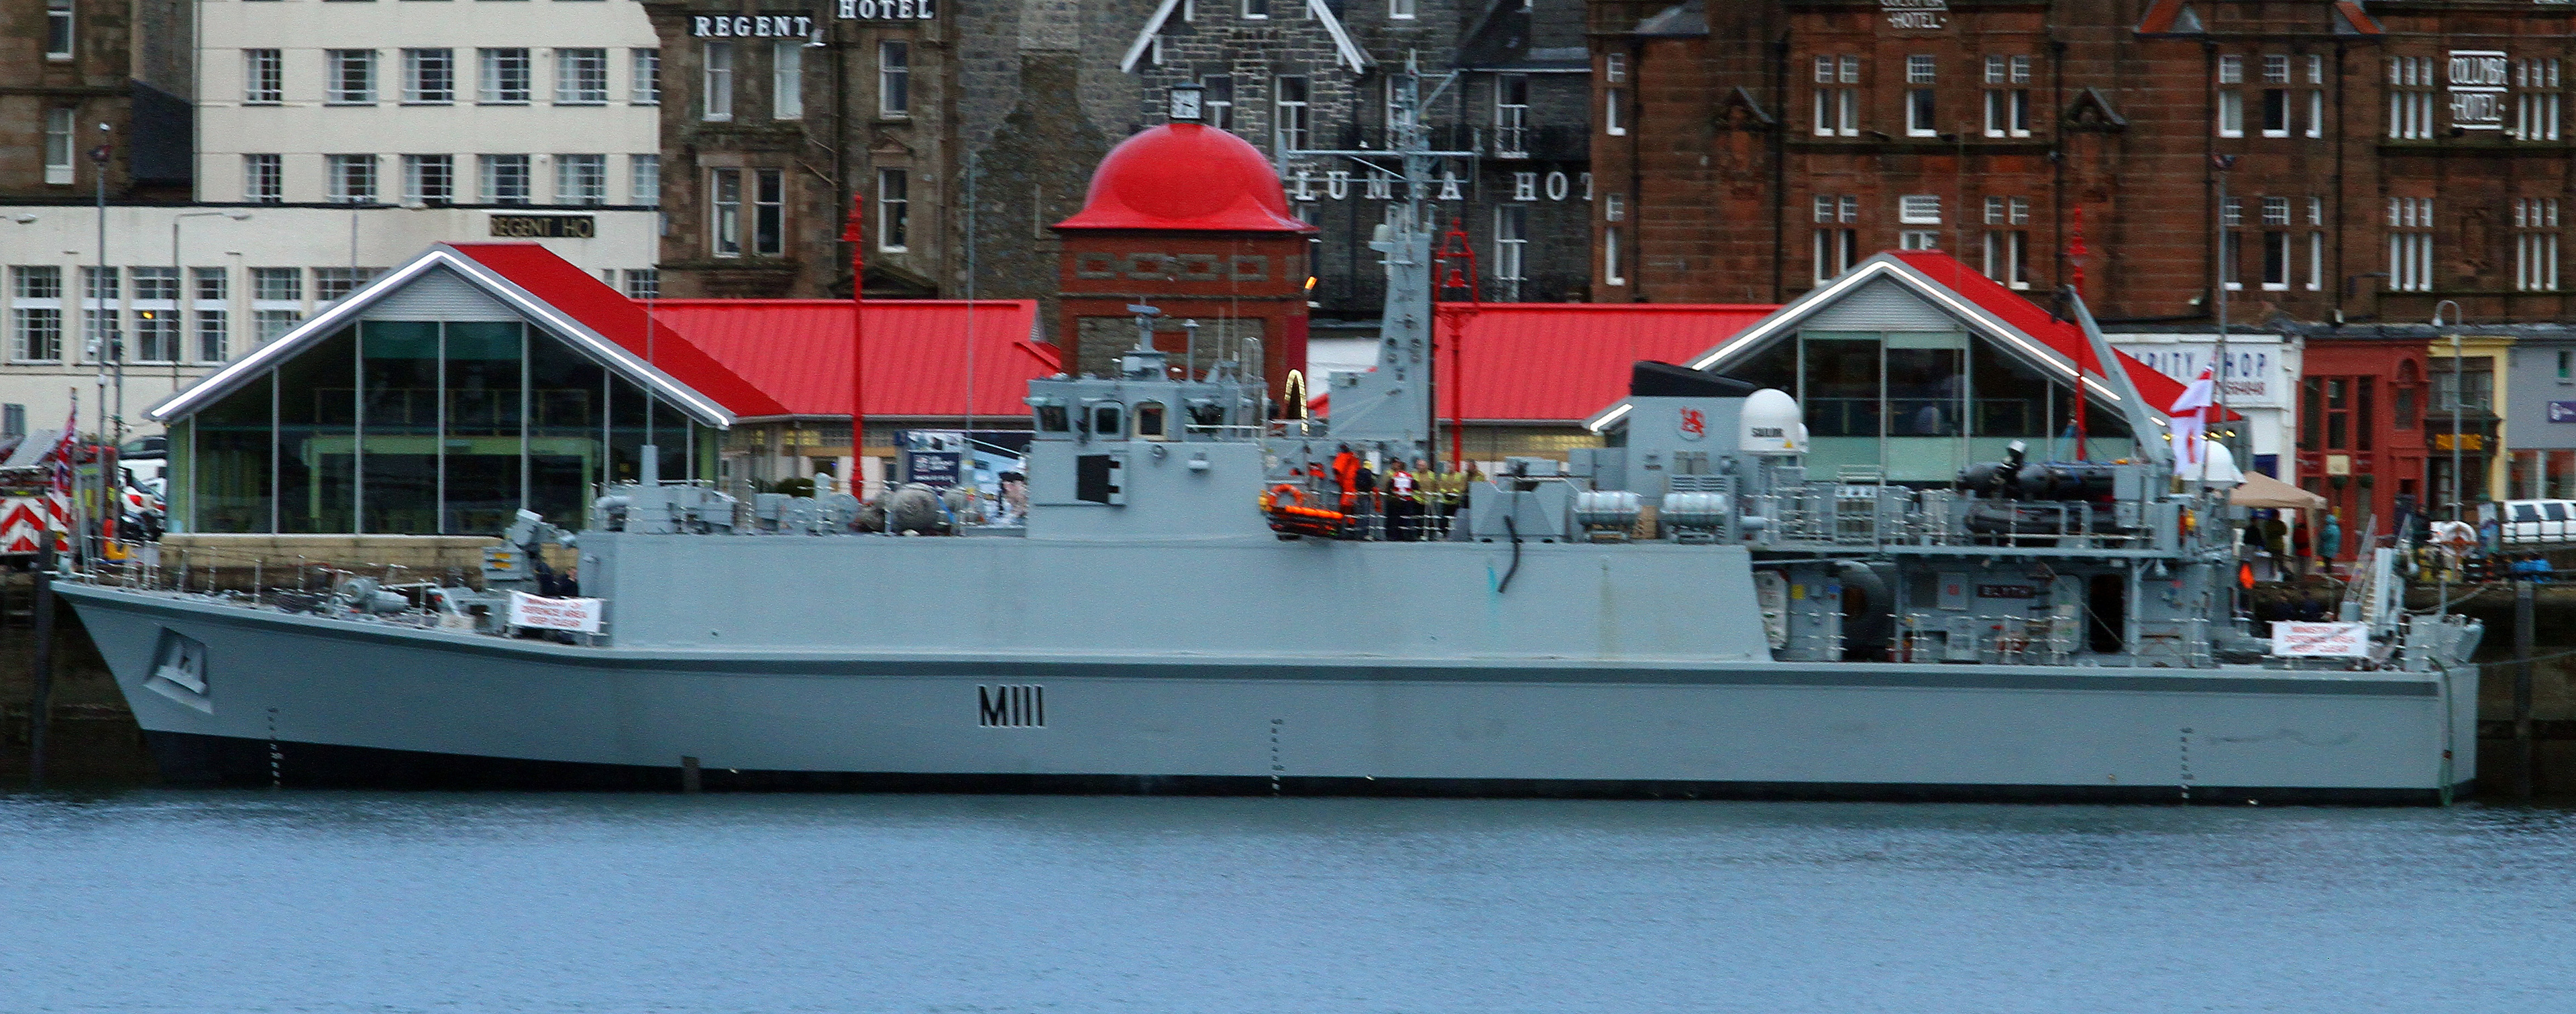 Minehunter HMS Blyth at the North Pier.